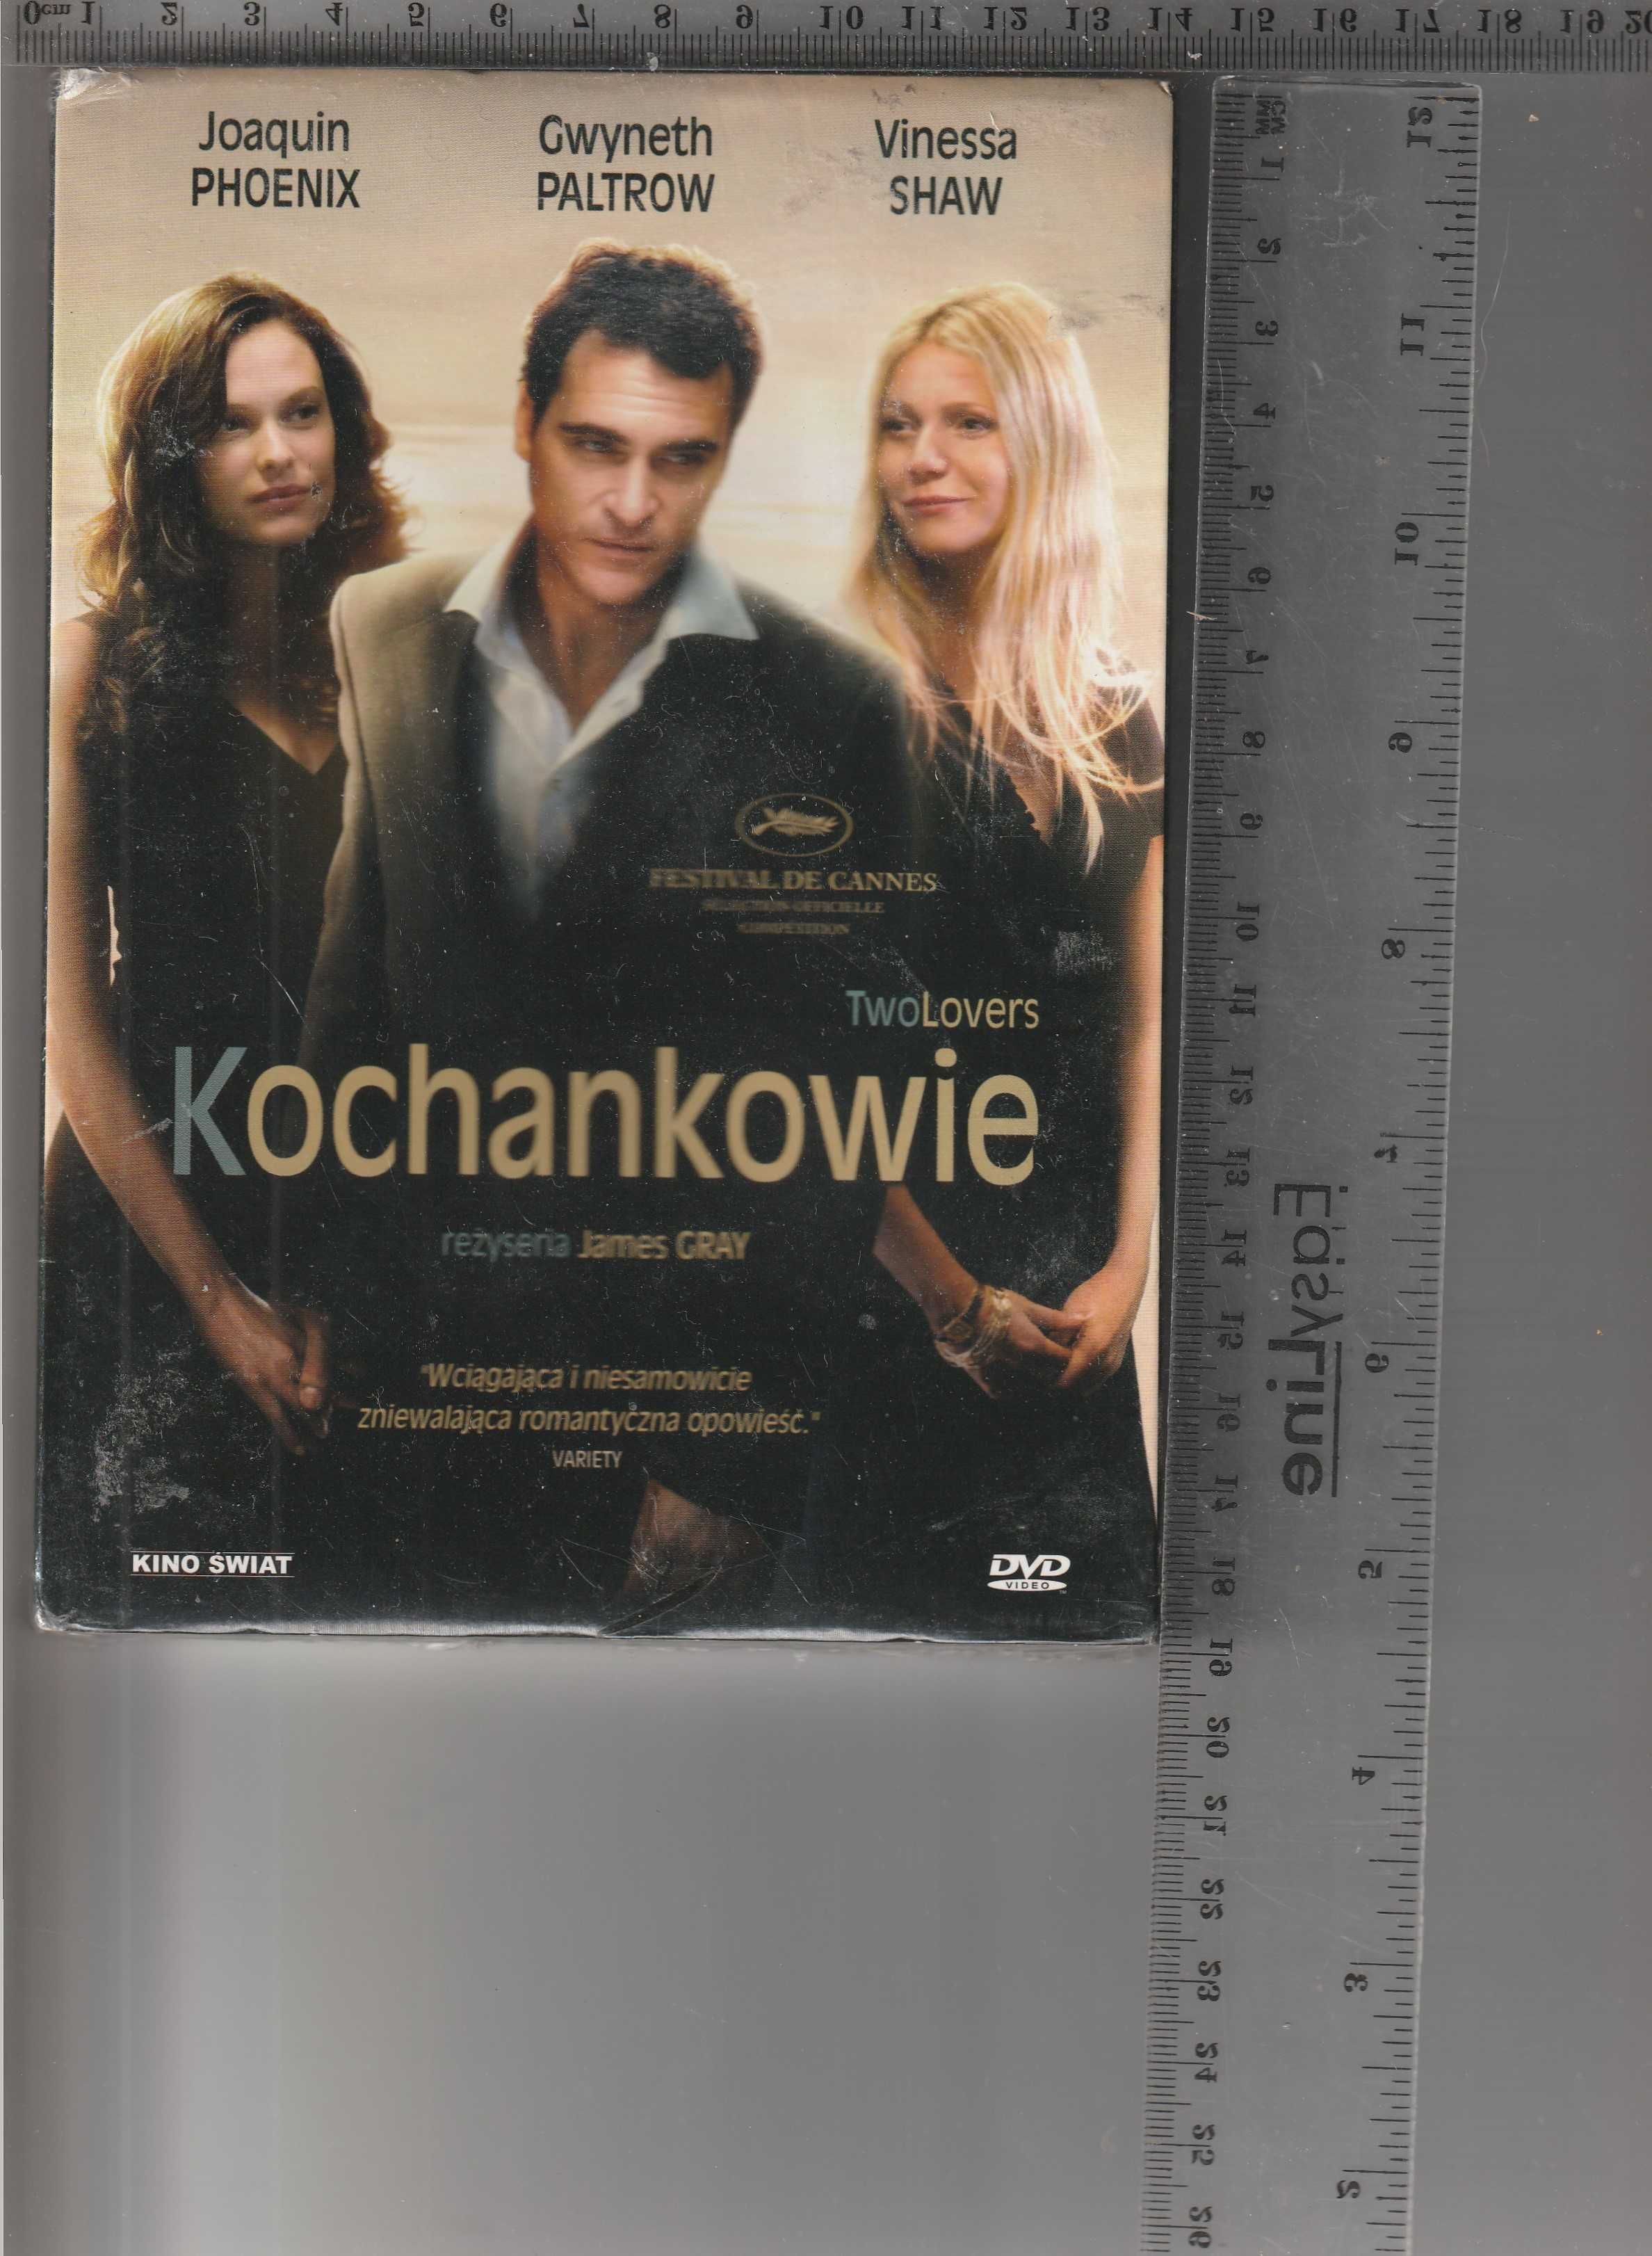 Kochankowie Joaquin Phoenix,Gwyneth Paltrow DVD